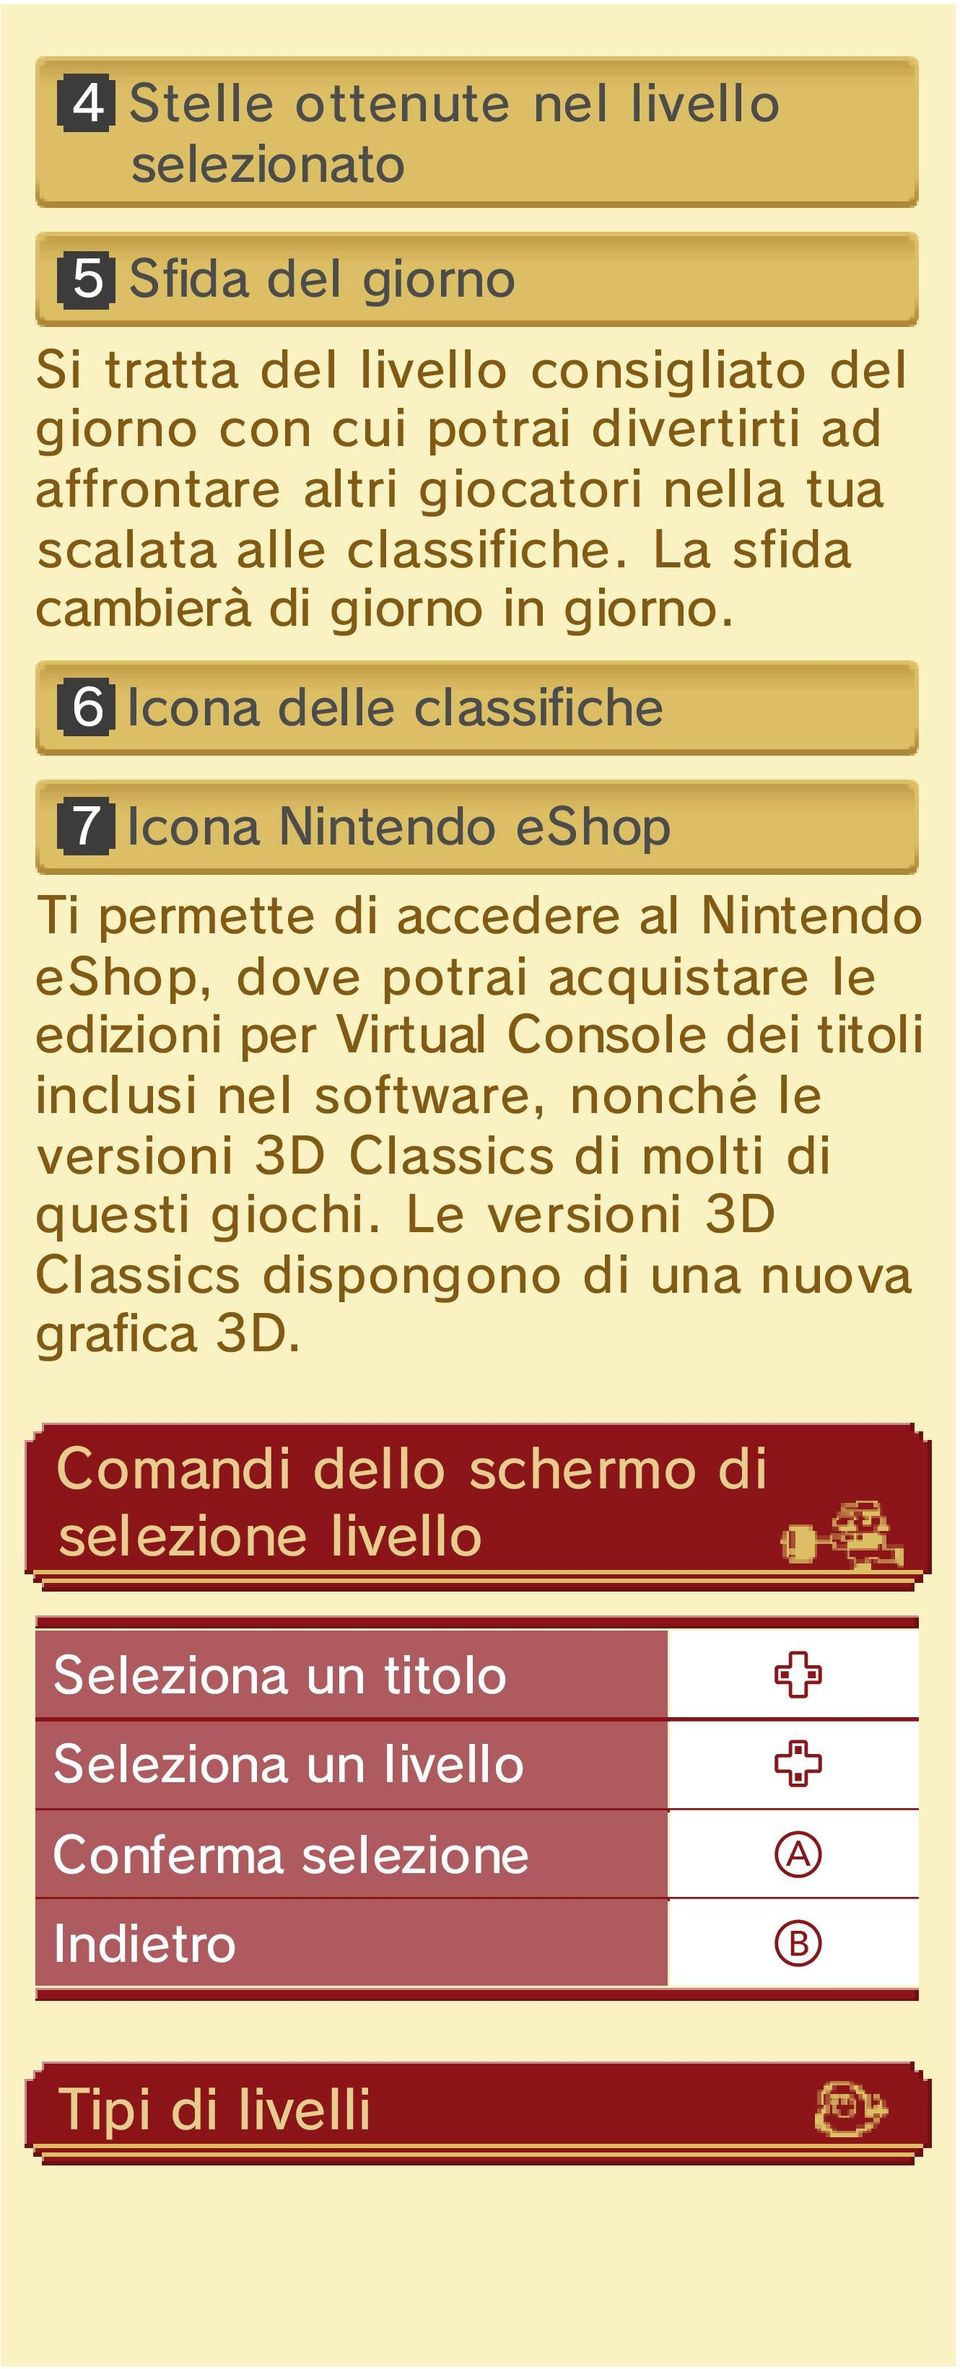 6 Icona delle classifiche 7 Icona Nintendo eshop Ti permette di accedere al Nintendo eshop, dove potrai acquistare le edizioni per Virtual Console dei titoli inclusi